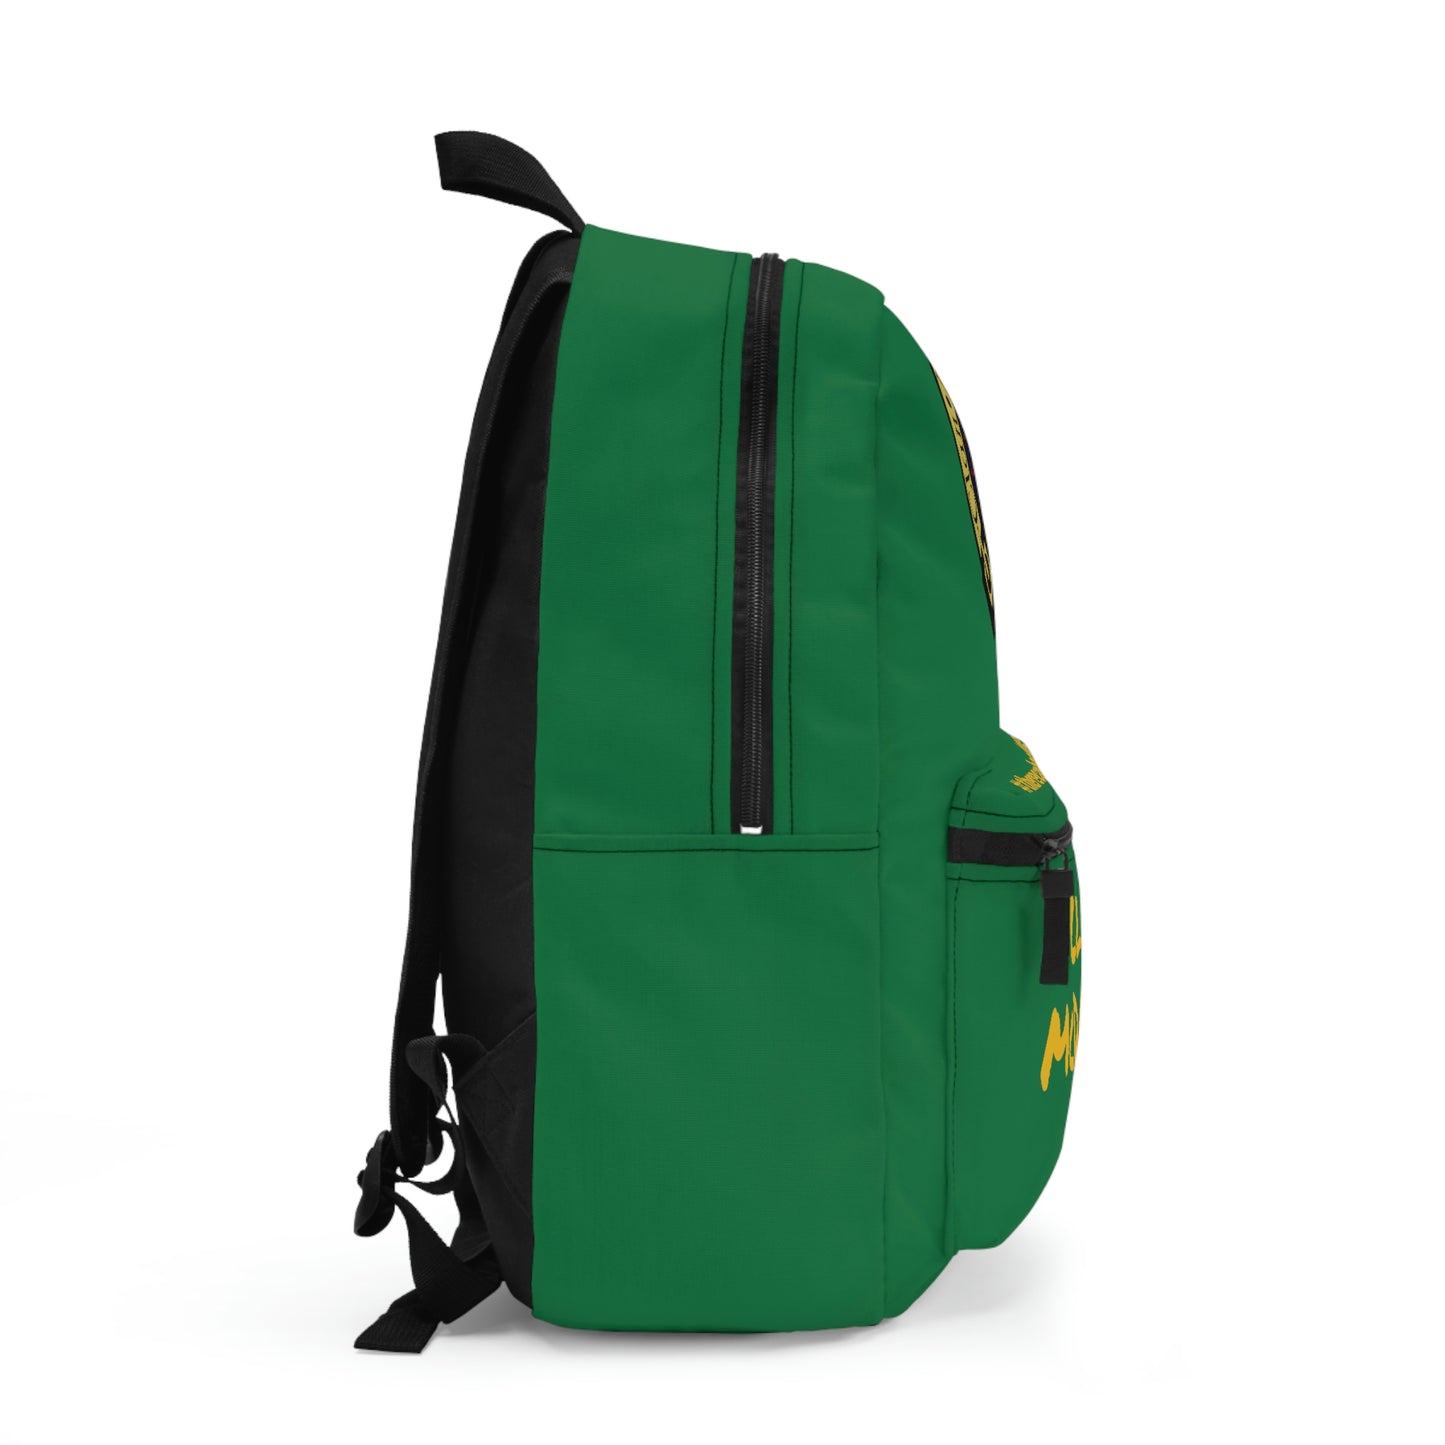 Clan McDonald Comics Backpack - Emerald Green